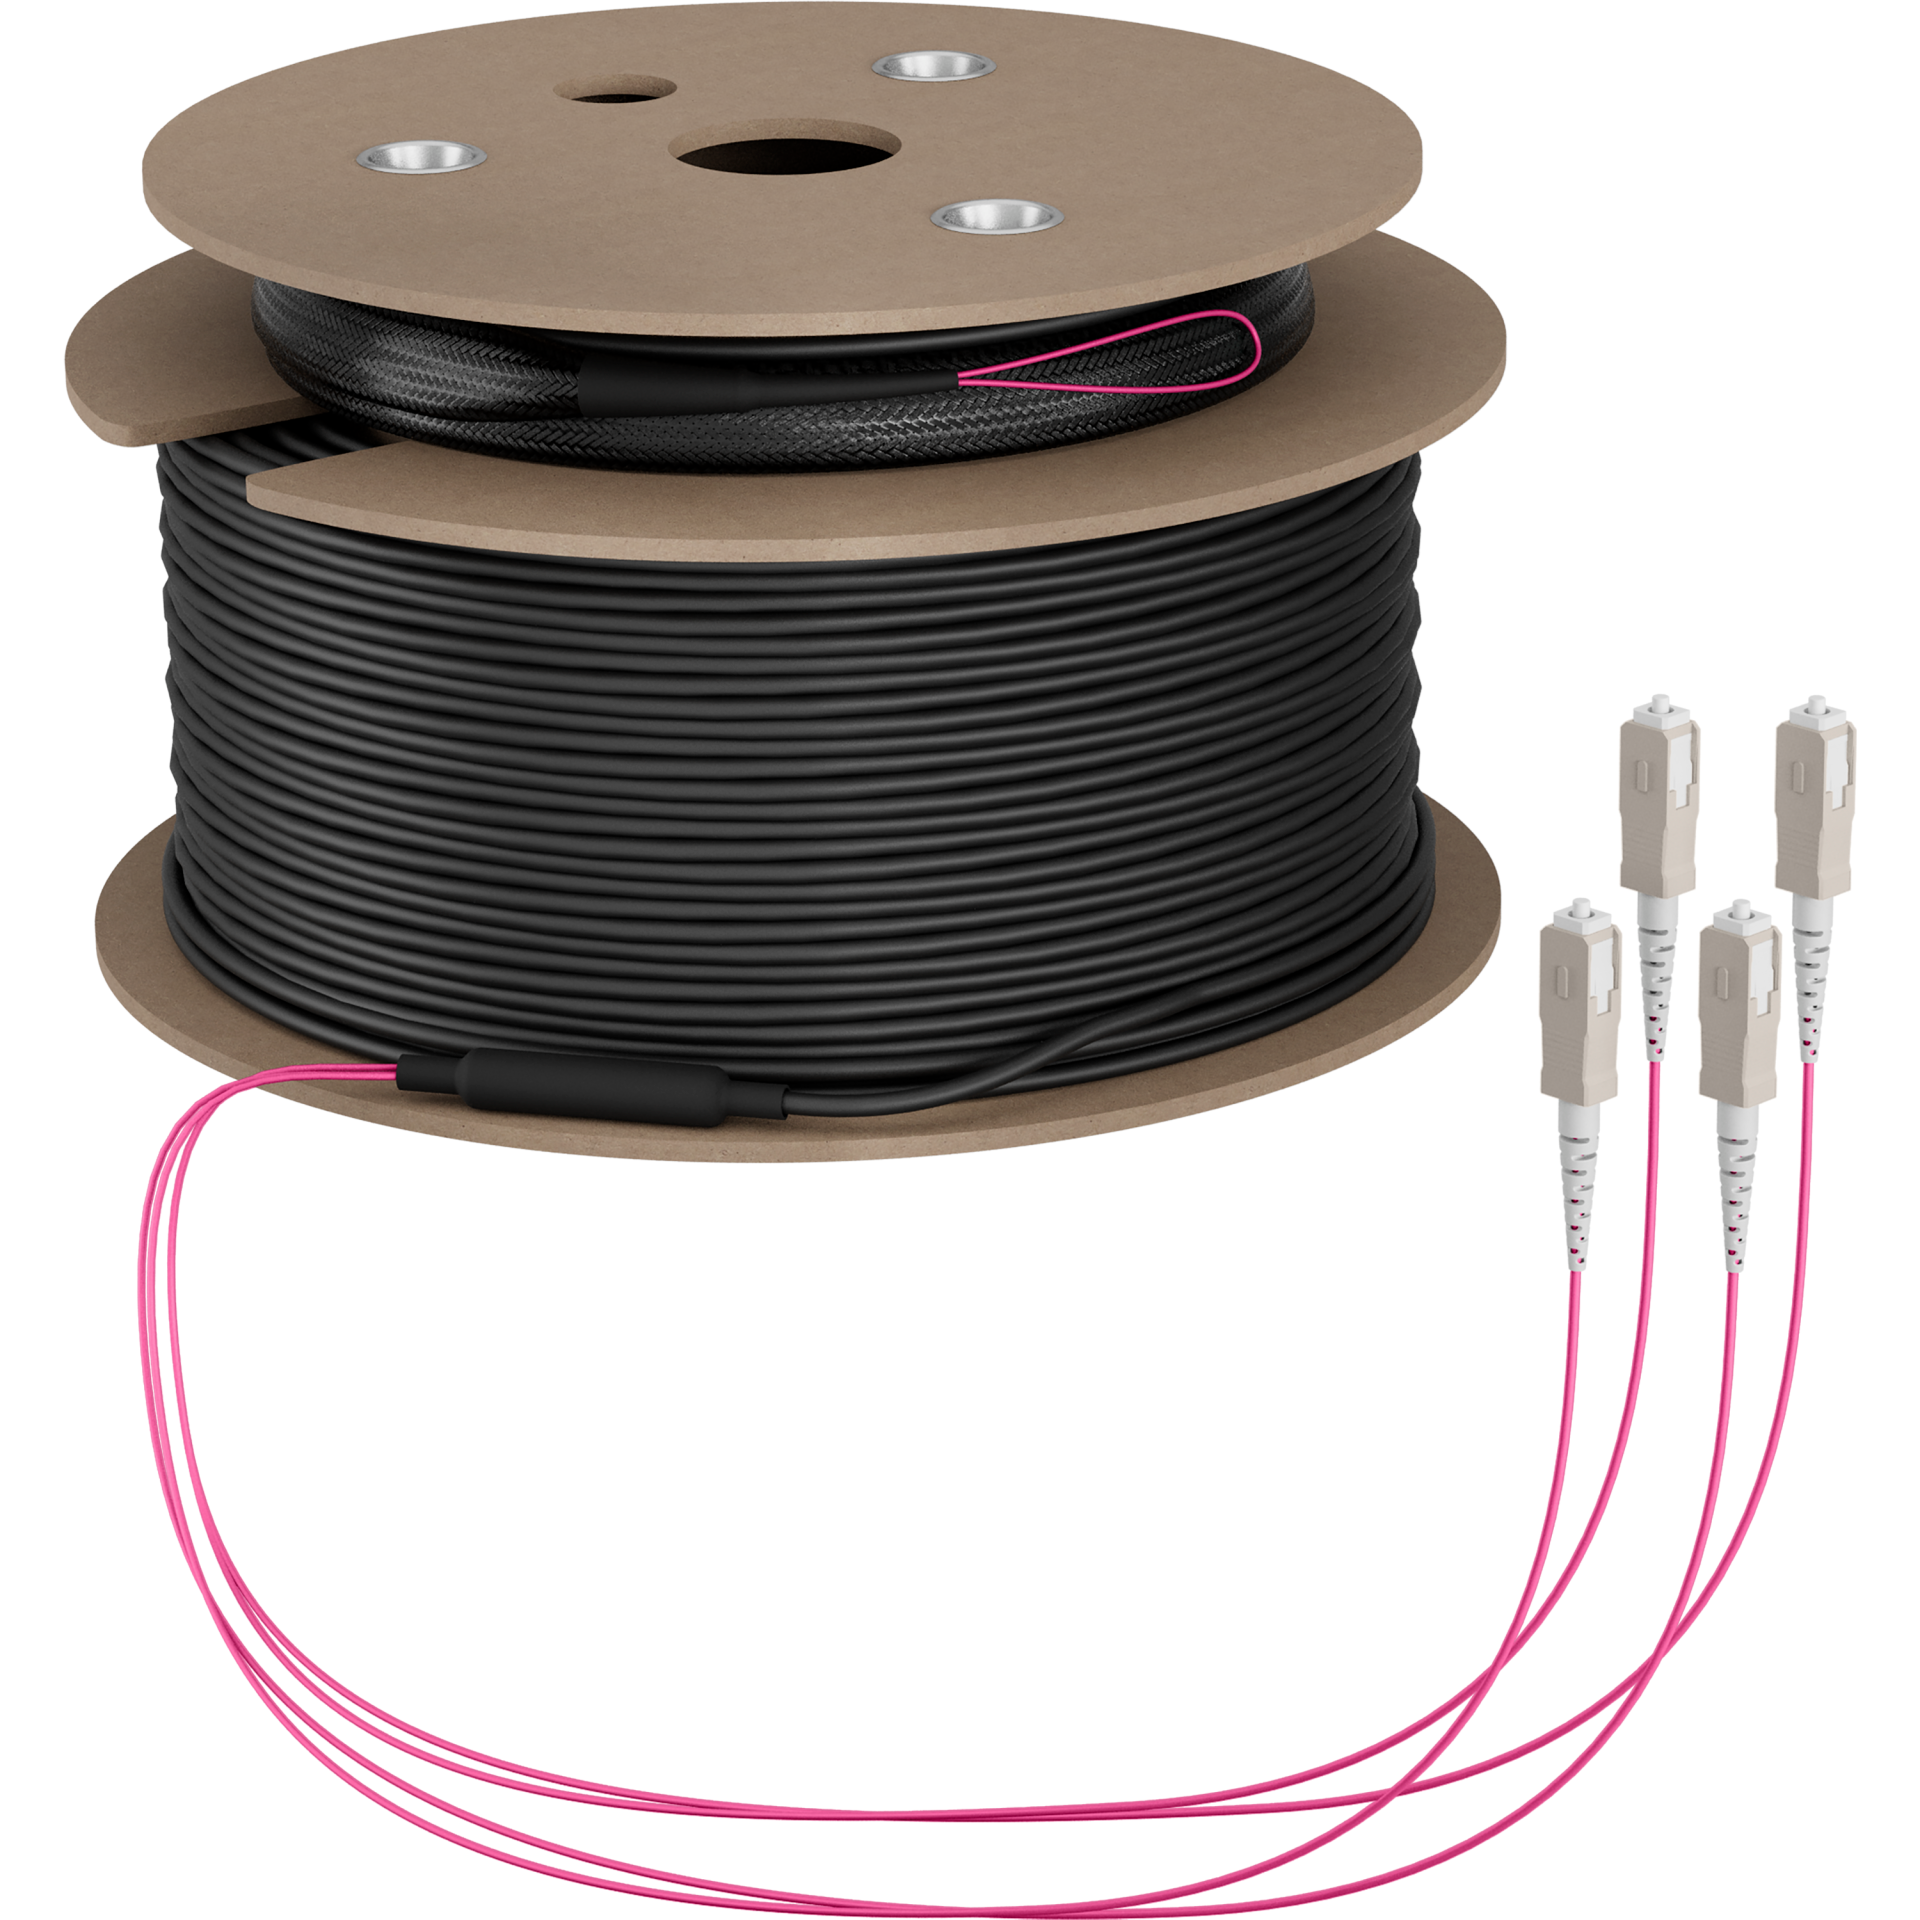 Trunk cable U-DQ(ZN)BH OM4 4G (1x4) SC-SC,90m Dca LSZH